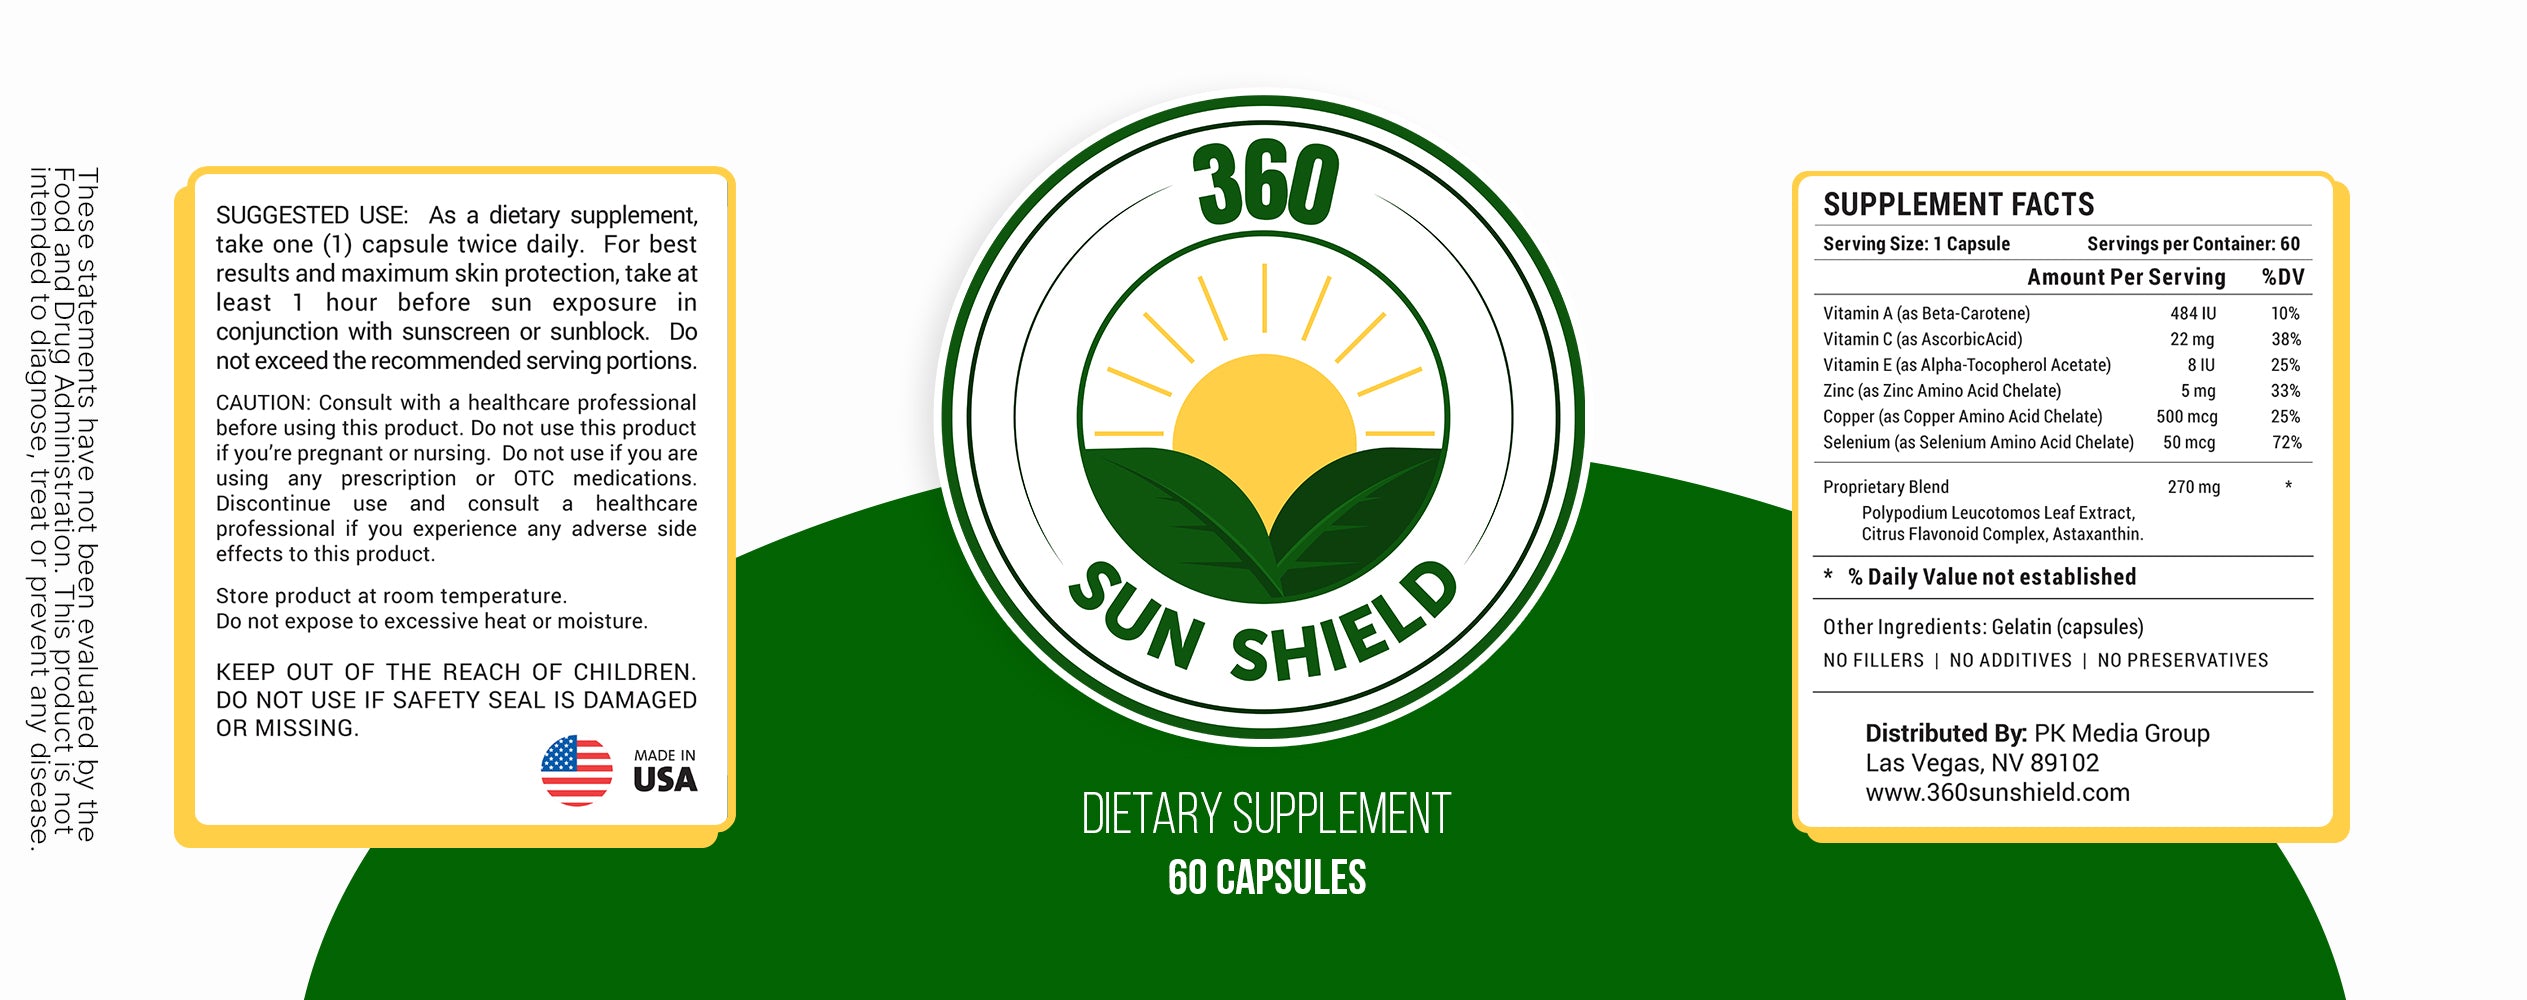 360 Sun Shield